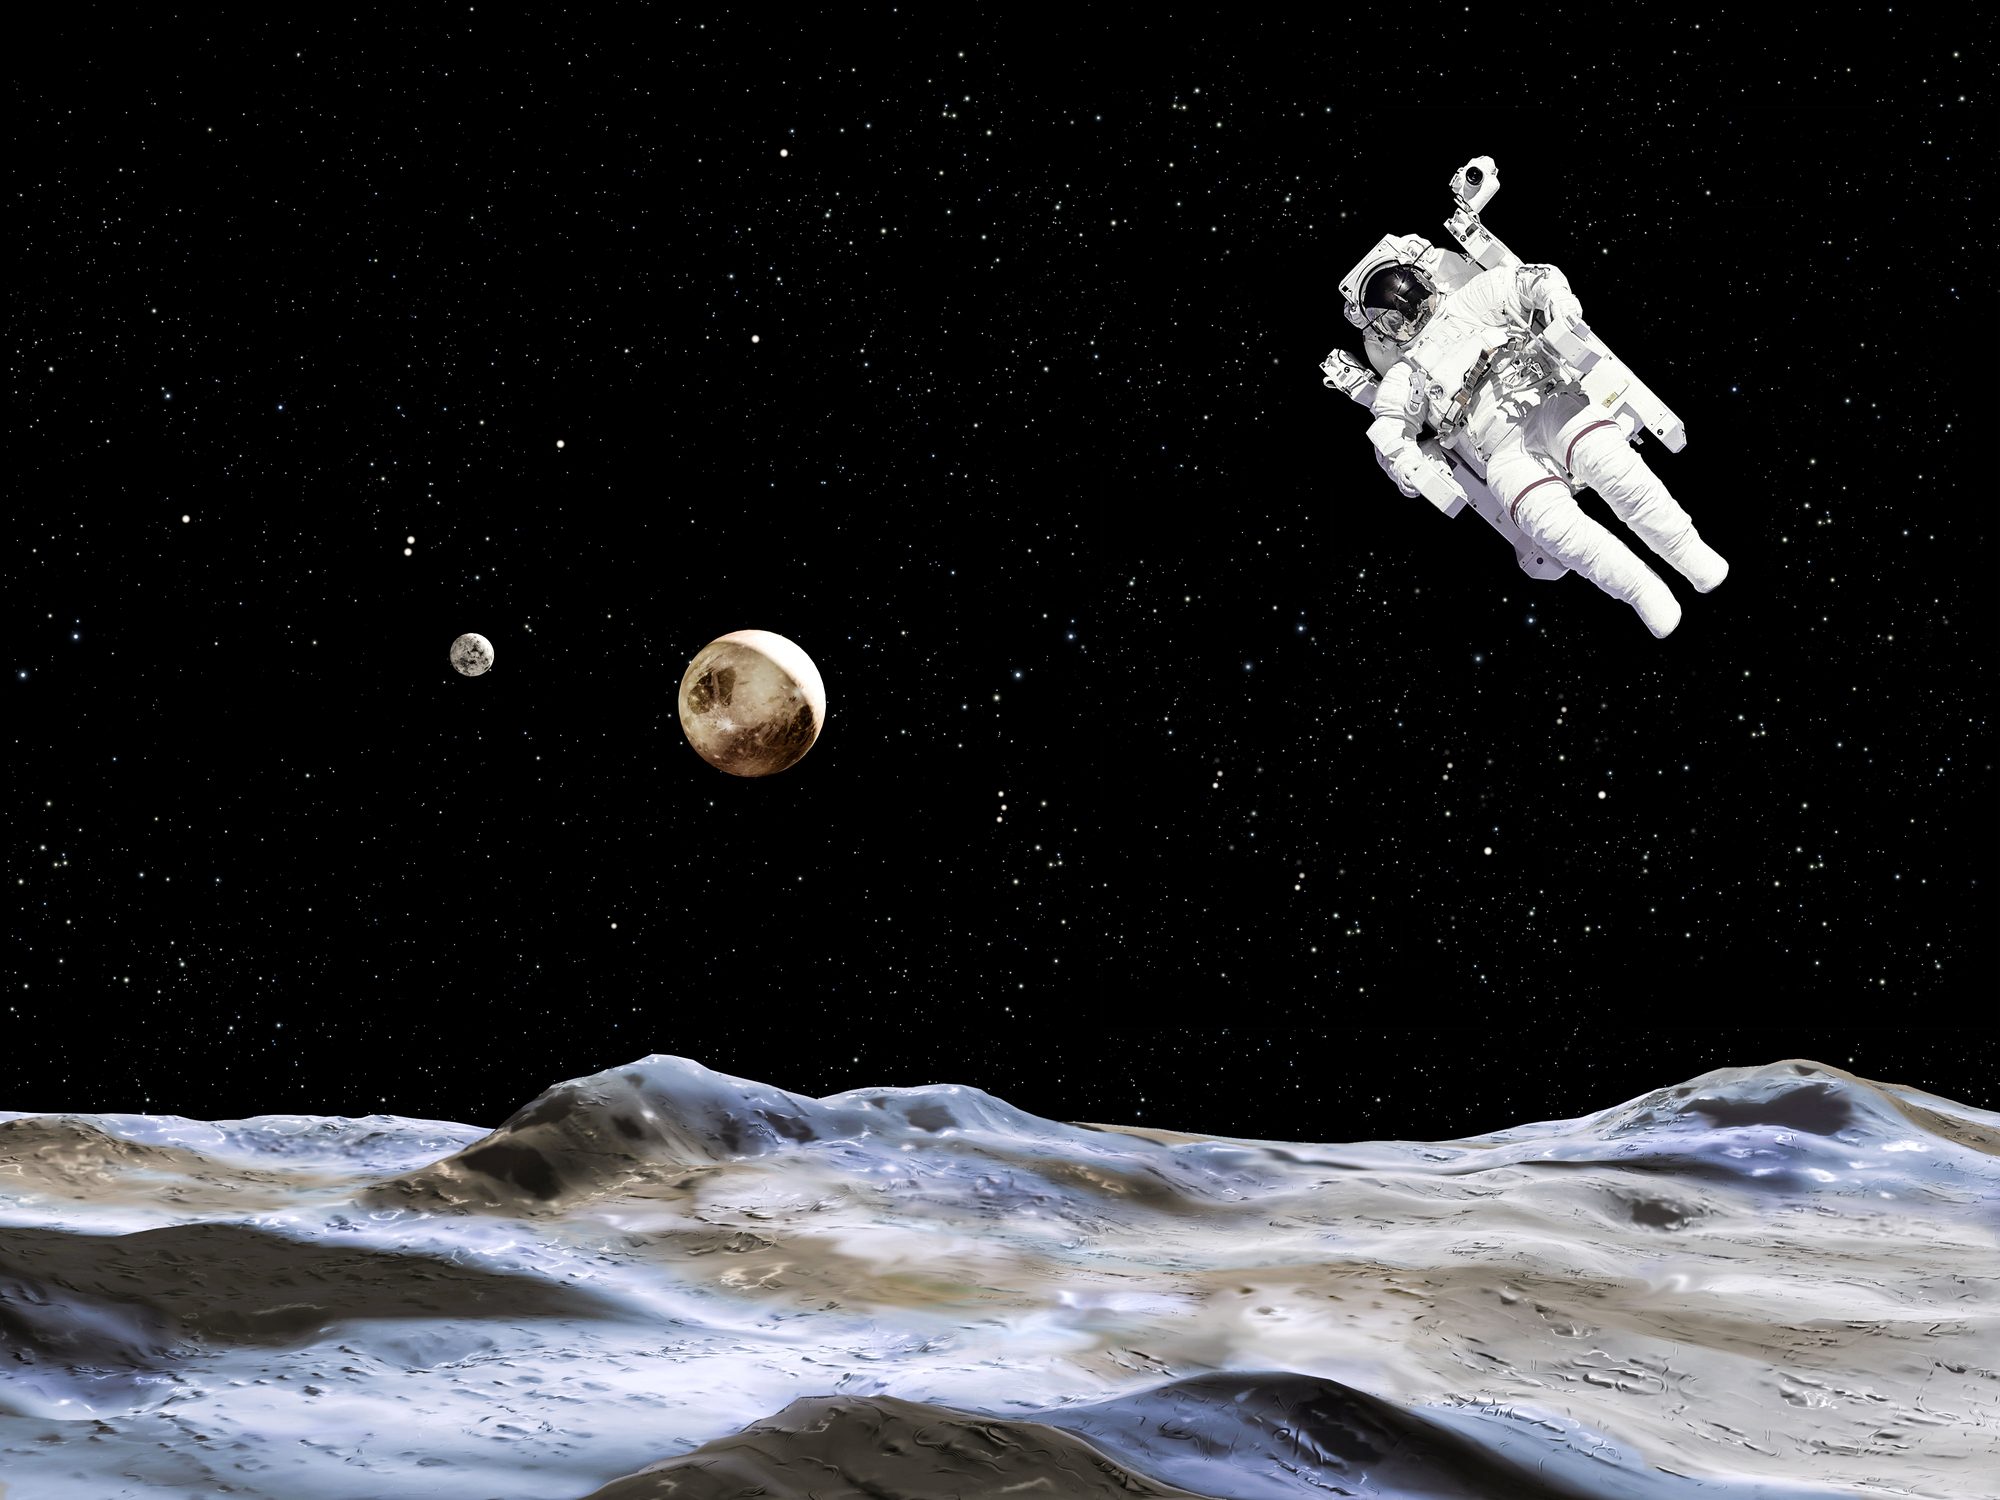 وكالة الفضاء الروسية تعيد حقيقة هبوط الأميركيين على سطح القمر إلى الواجهة